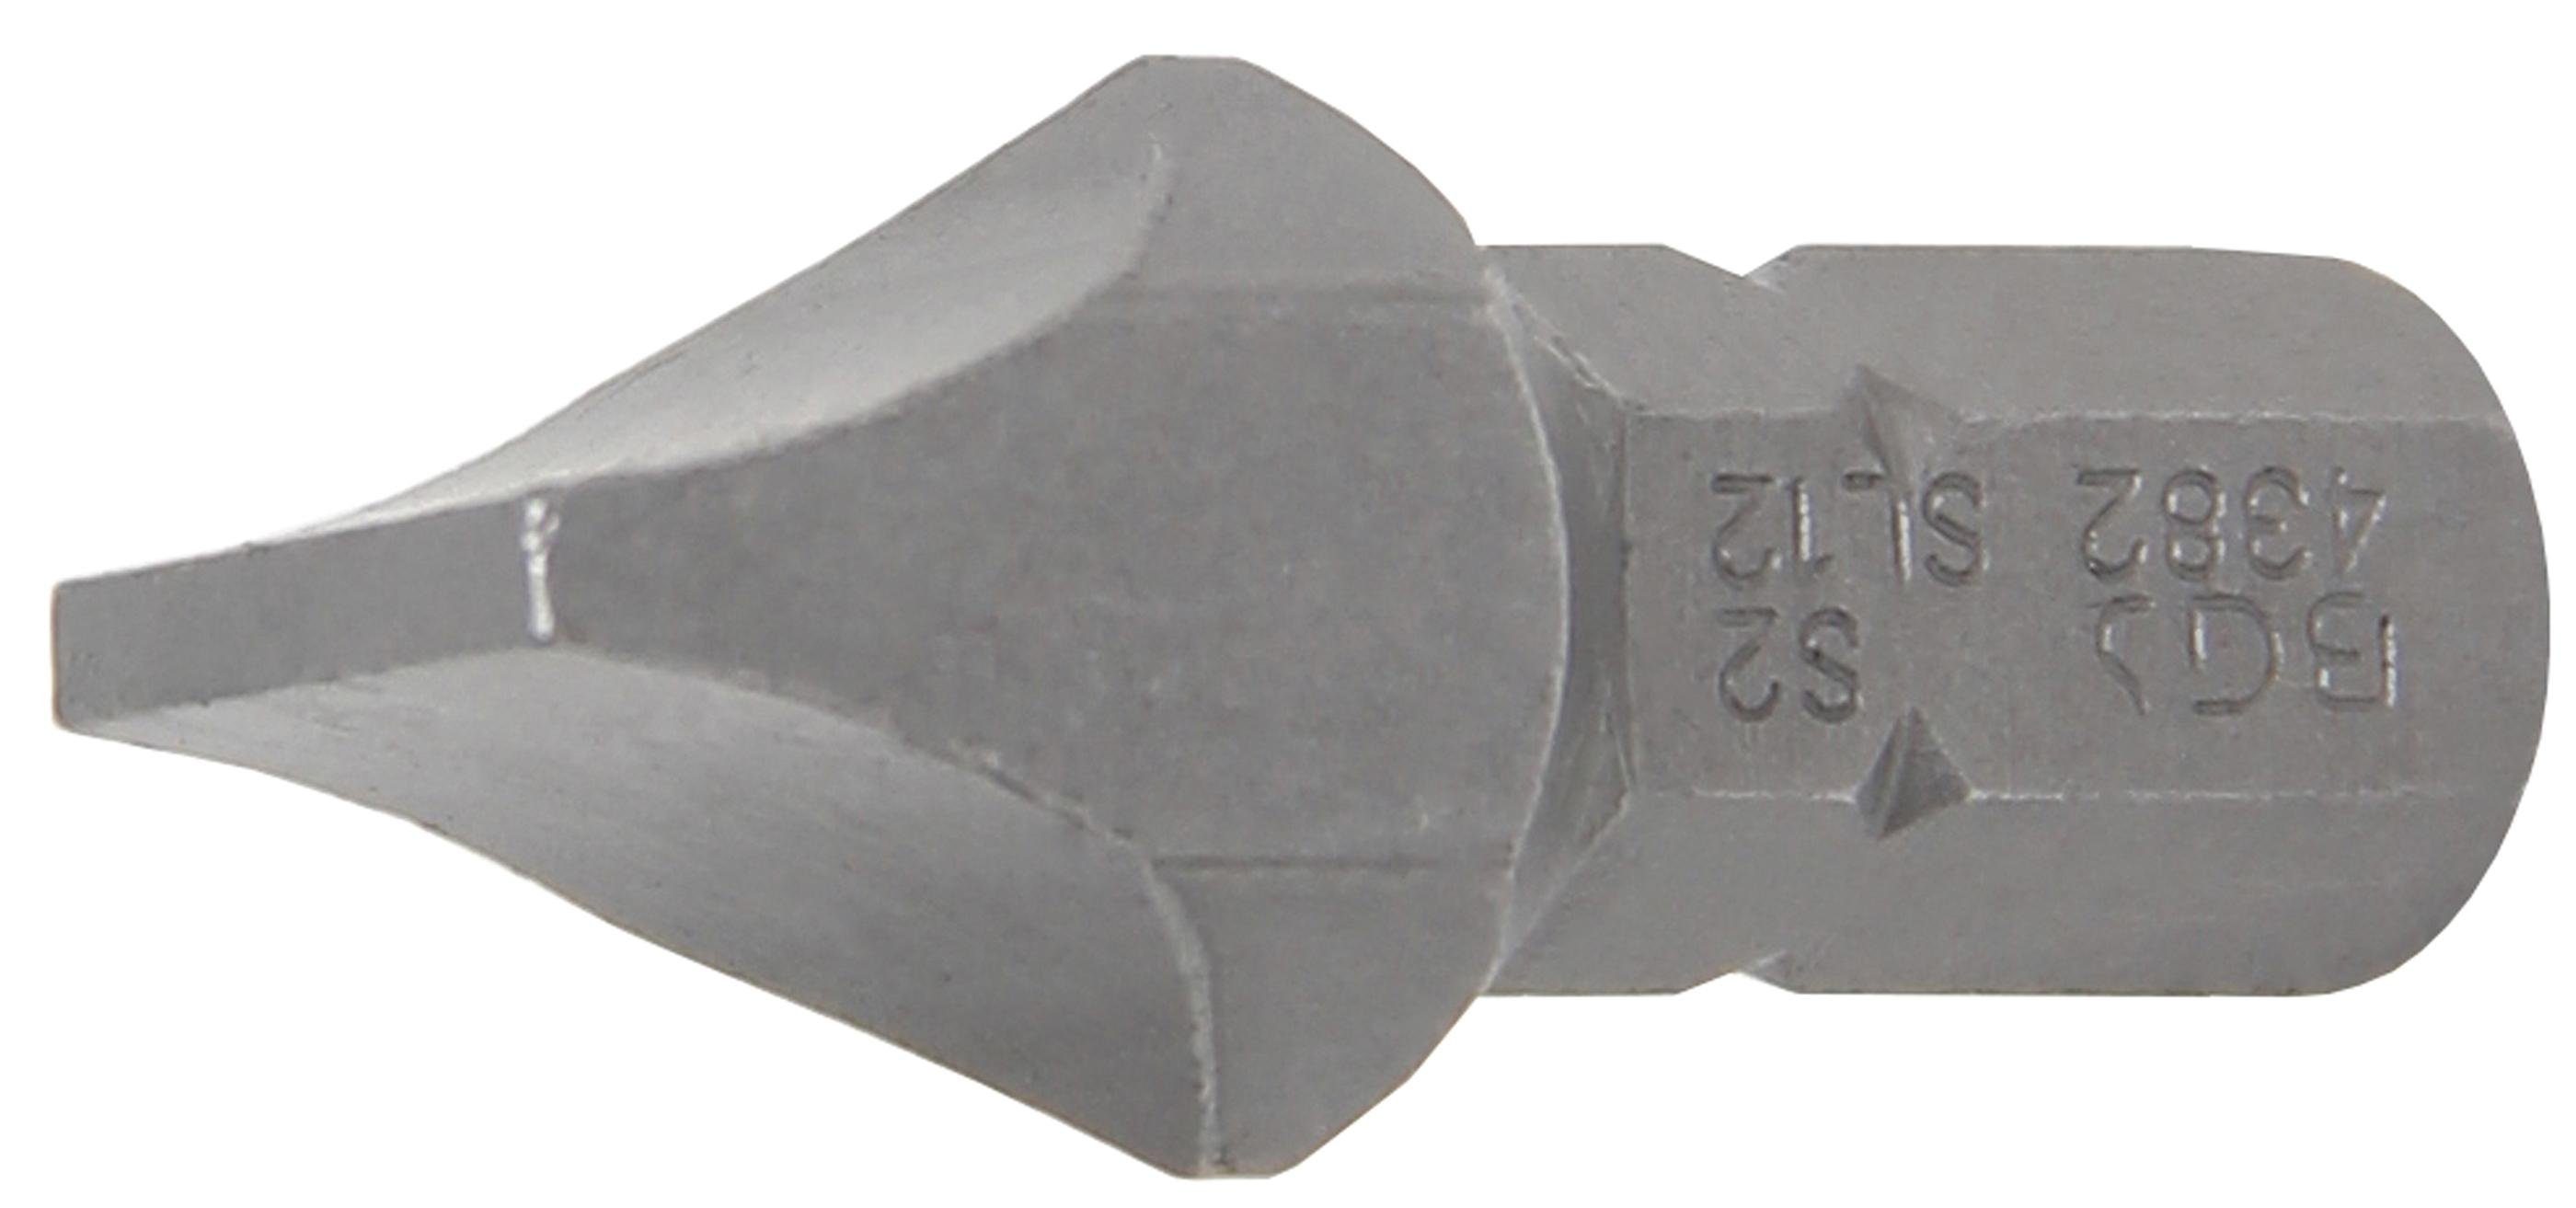 BGS technic Bit-Schraubendreher Bit, Antrieb Außensechskant 8 mm (5/16), Schlitz 12 mm